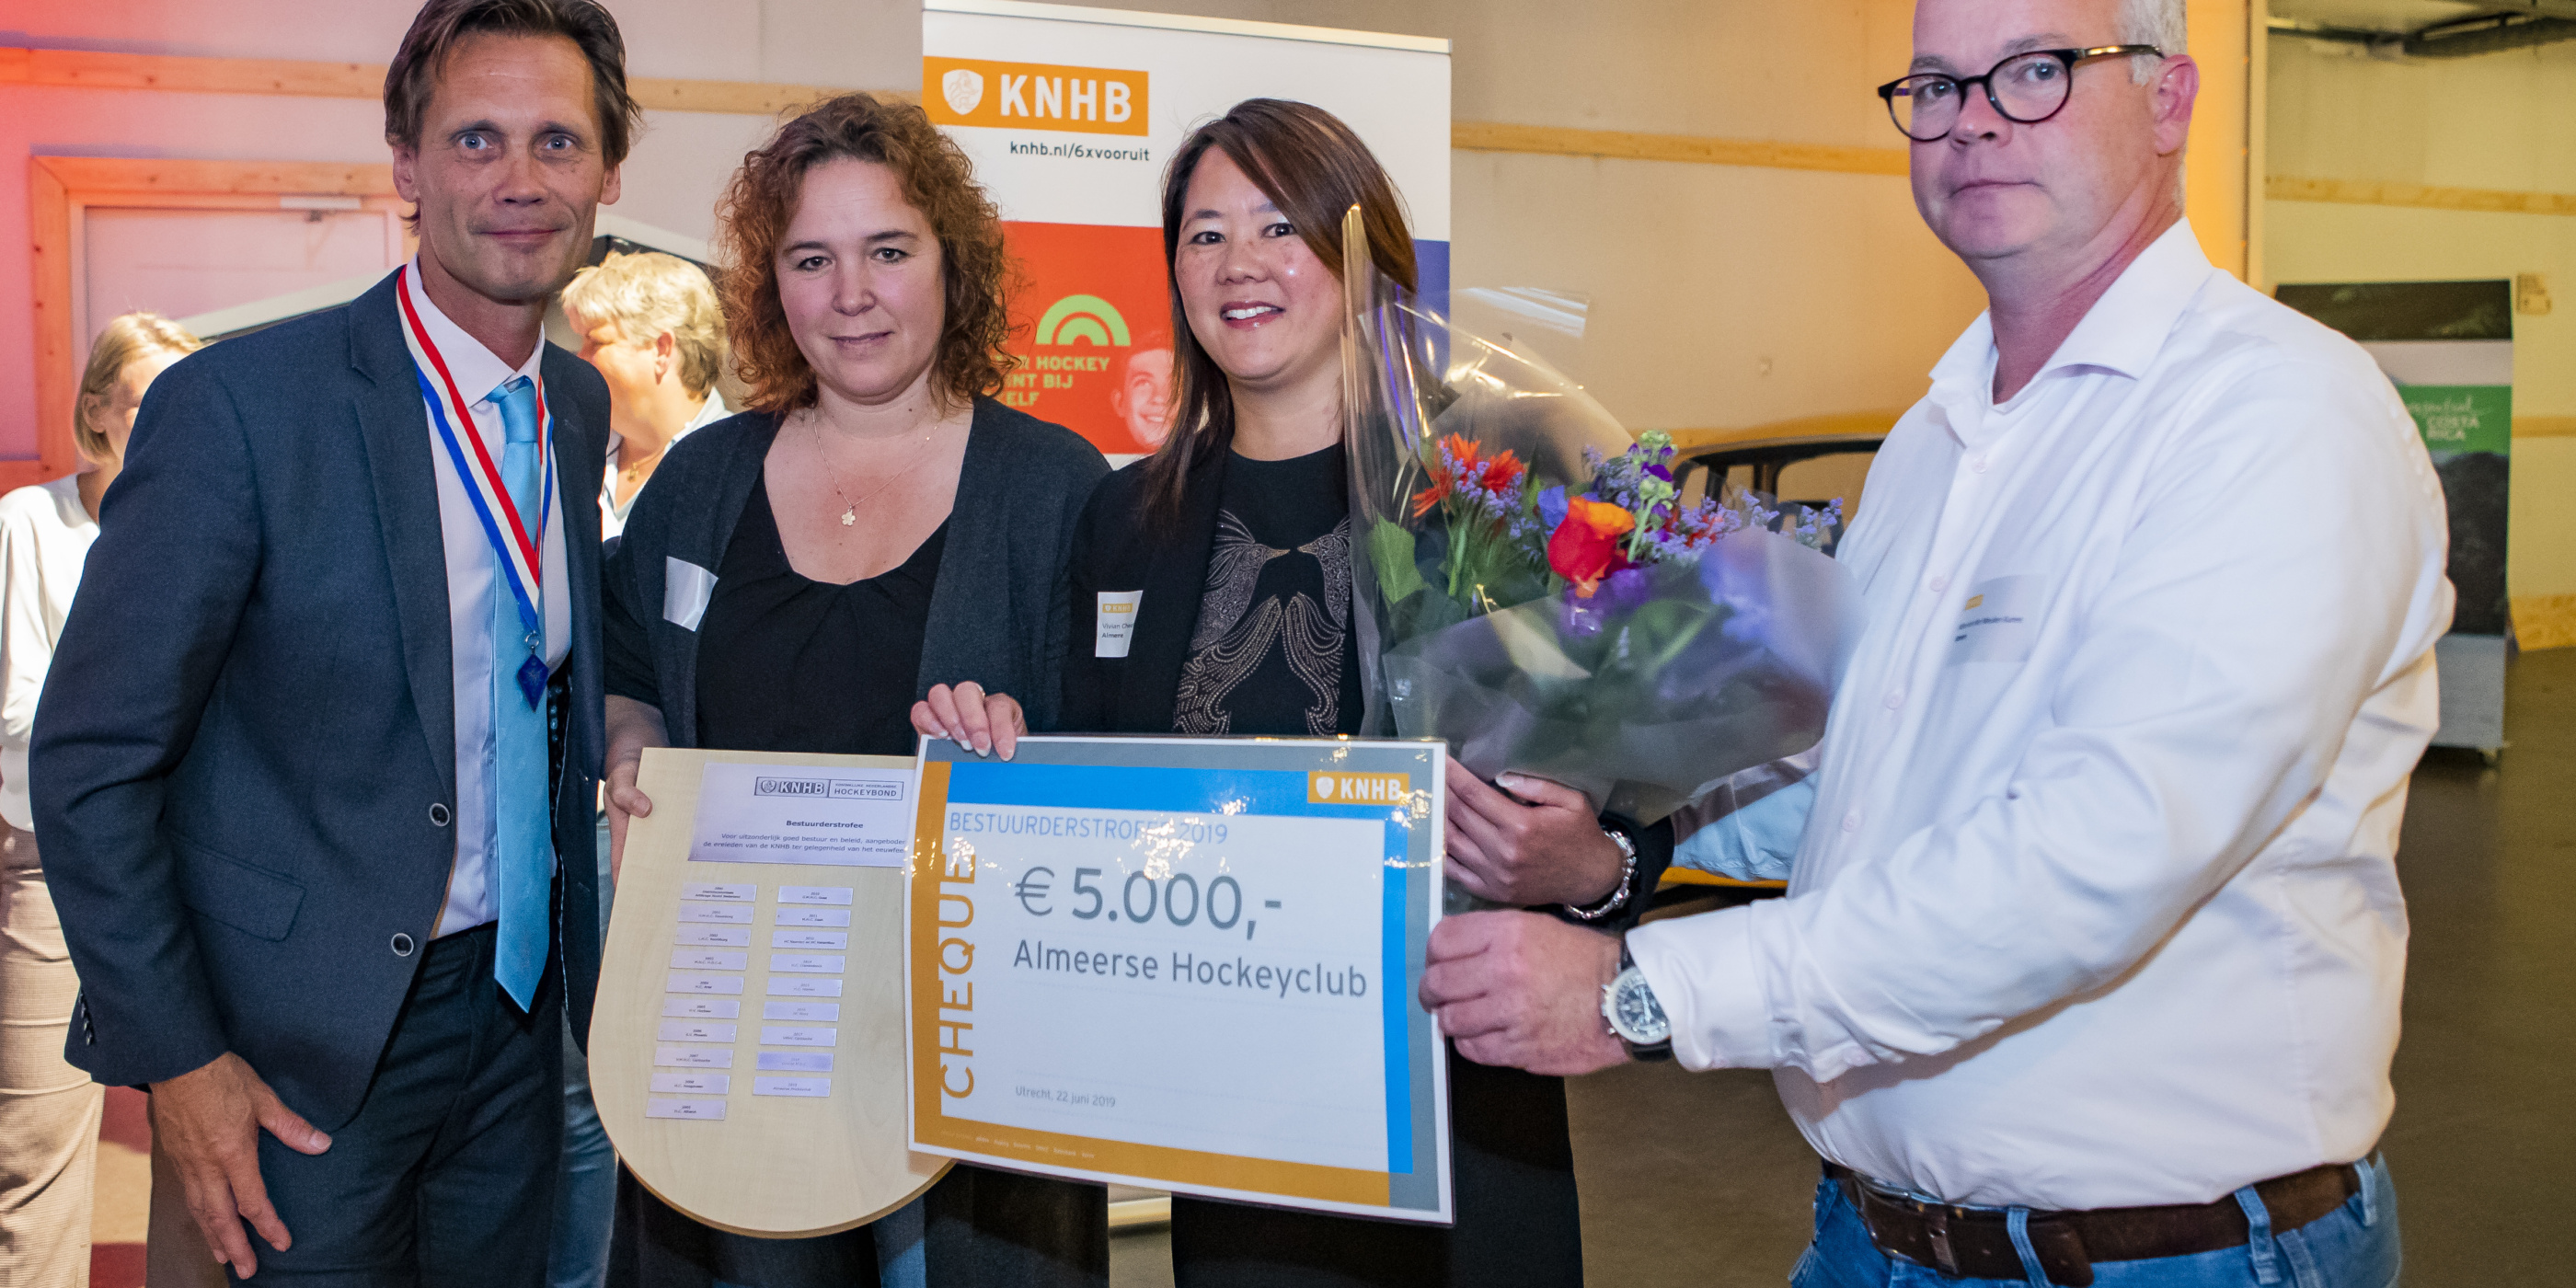 Win jij € 5.000 voor jouw vereniging? Doe mee met de KNHB bestuurderstrofee!